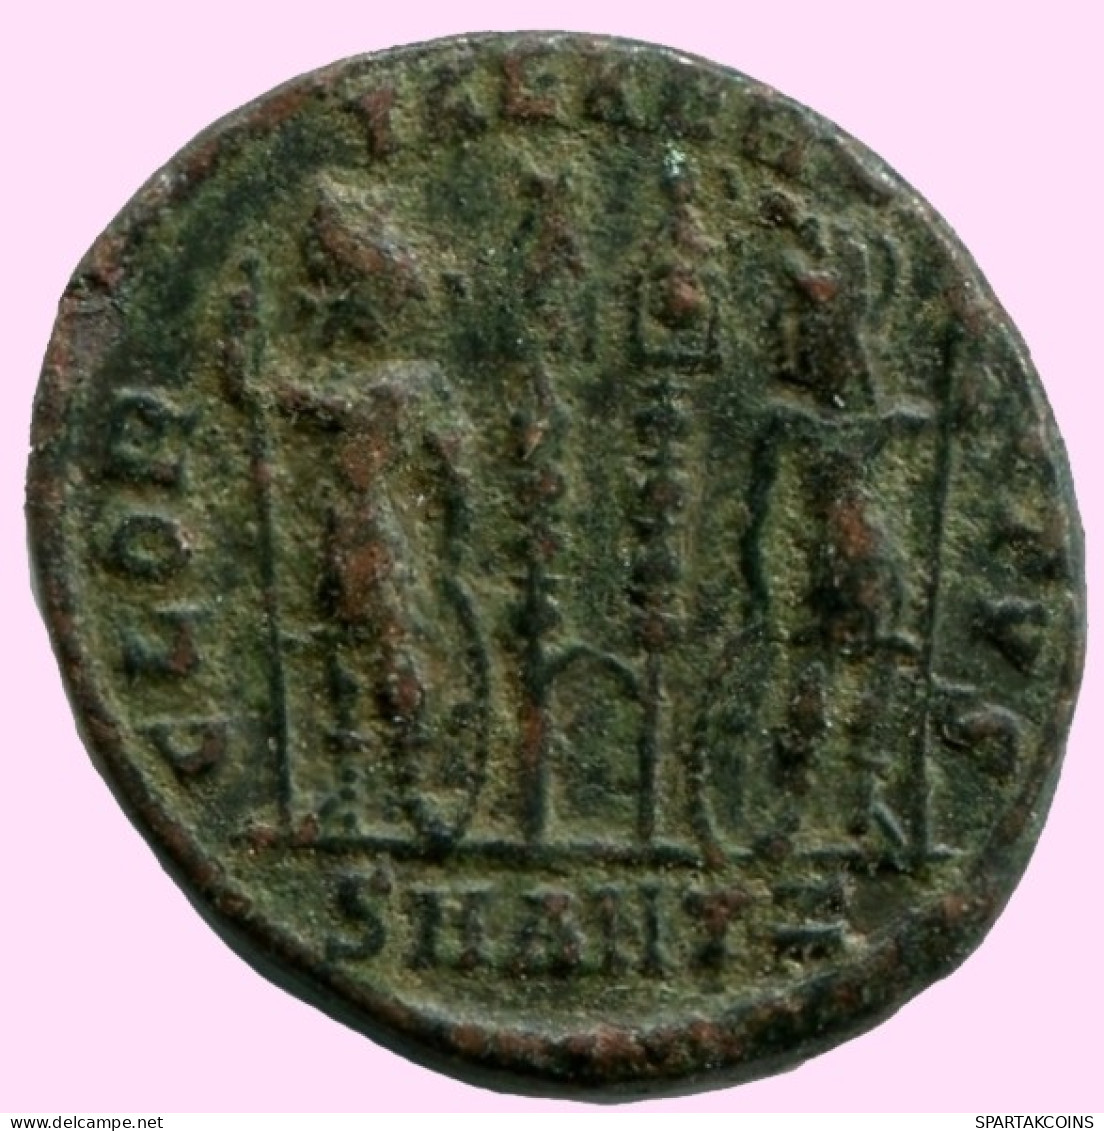 CONSTANTINE I Authentische Antike RÖMISCHEN KAISERZEIT Münze #ANC12230.12.D.A - The Christian Empire (307 AD To 363 AD)